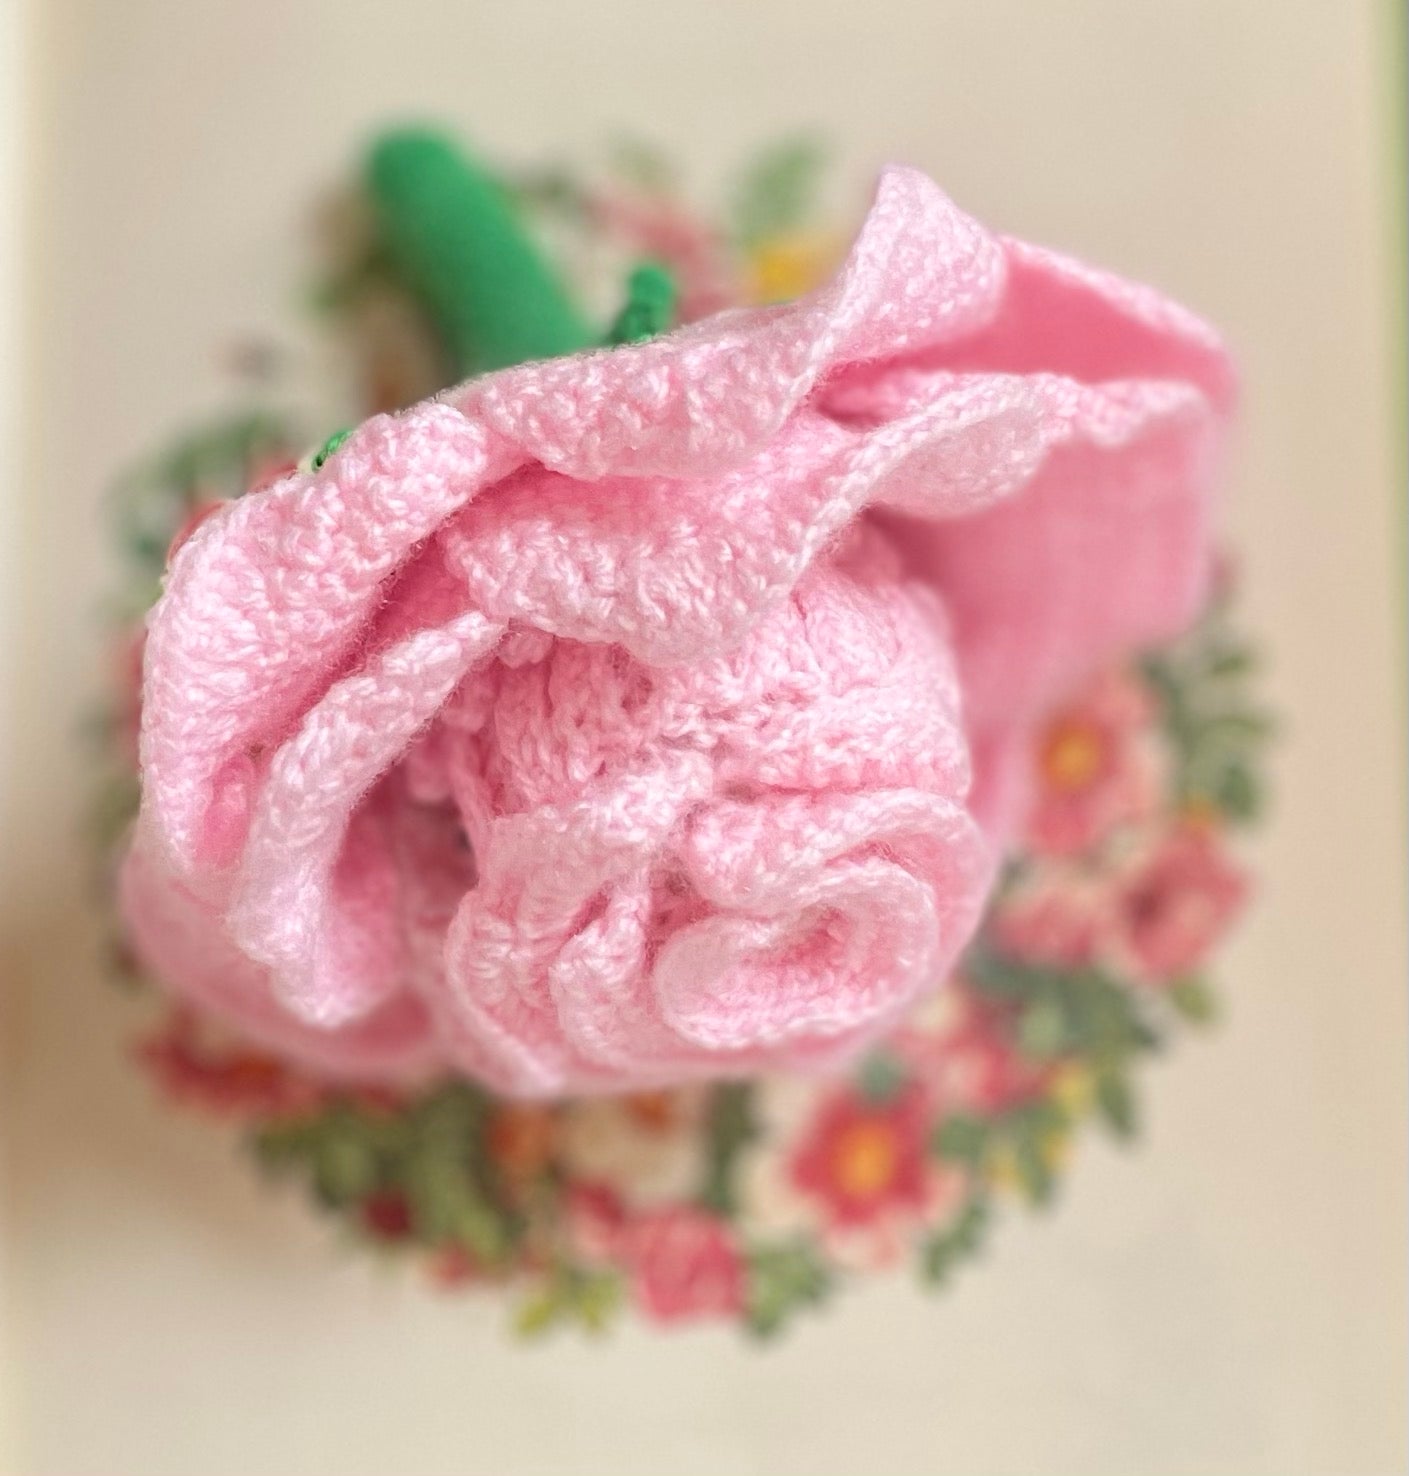 Reversible Rose Doll Pattern – Crochet Pattern